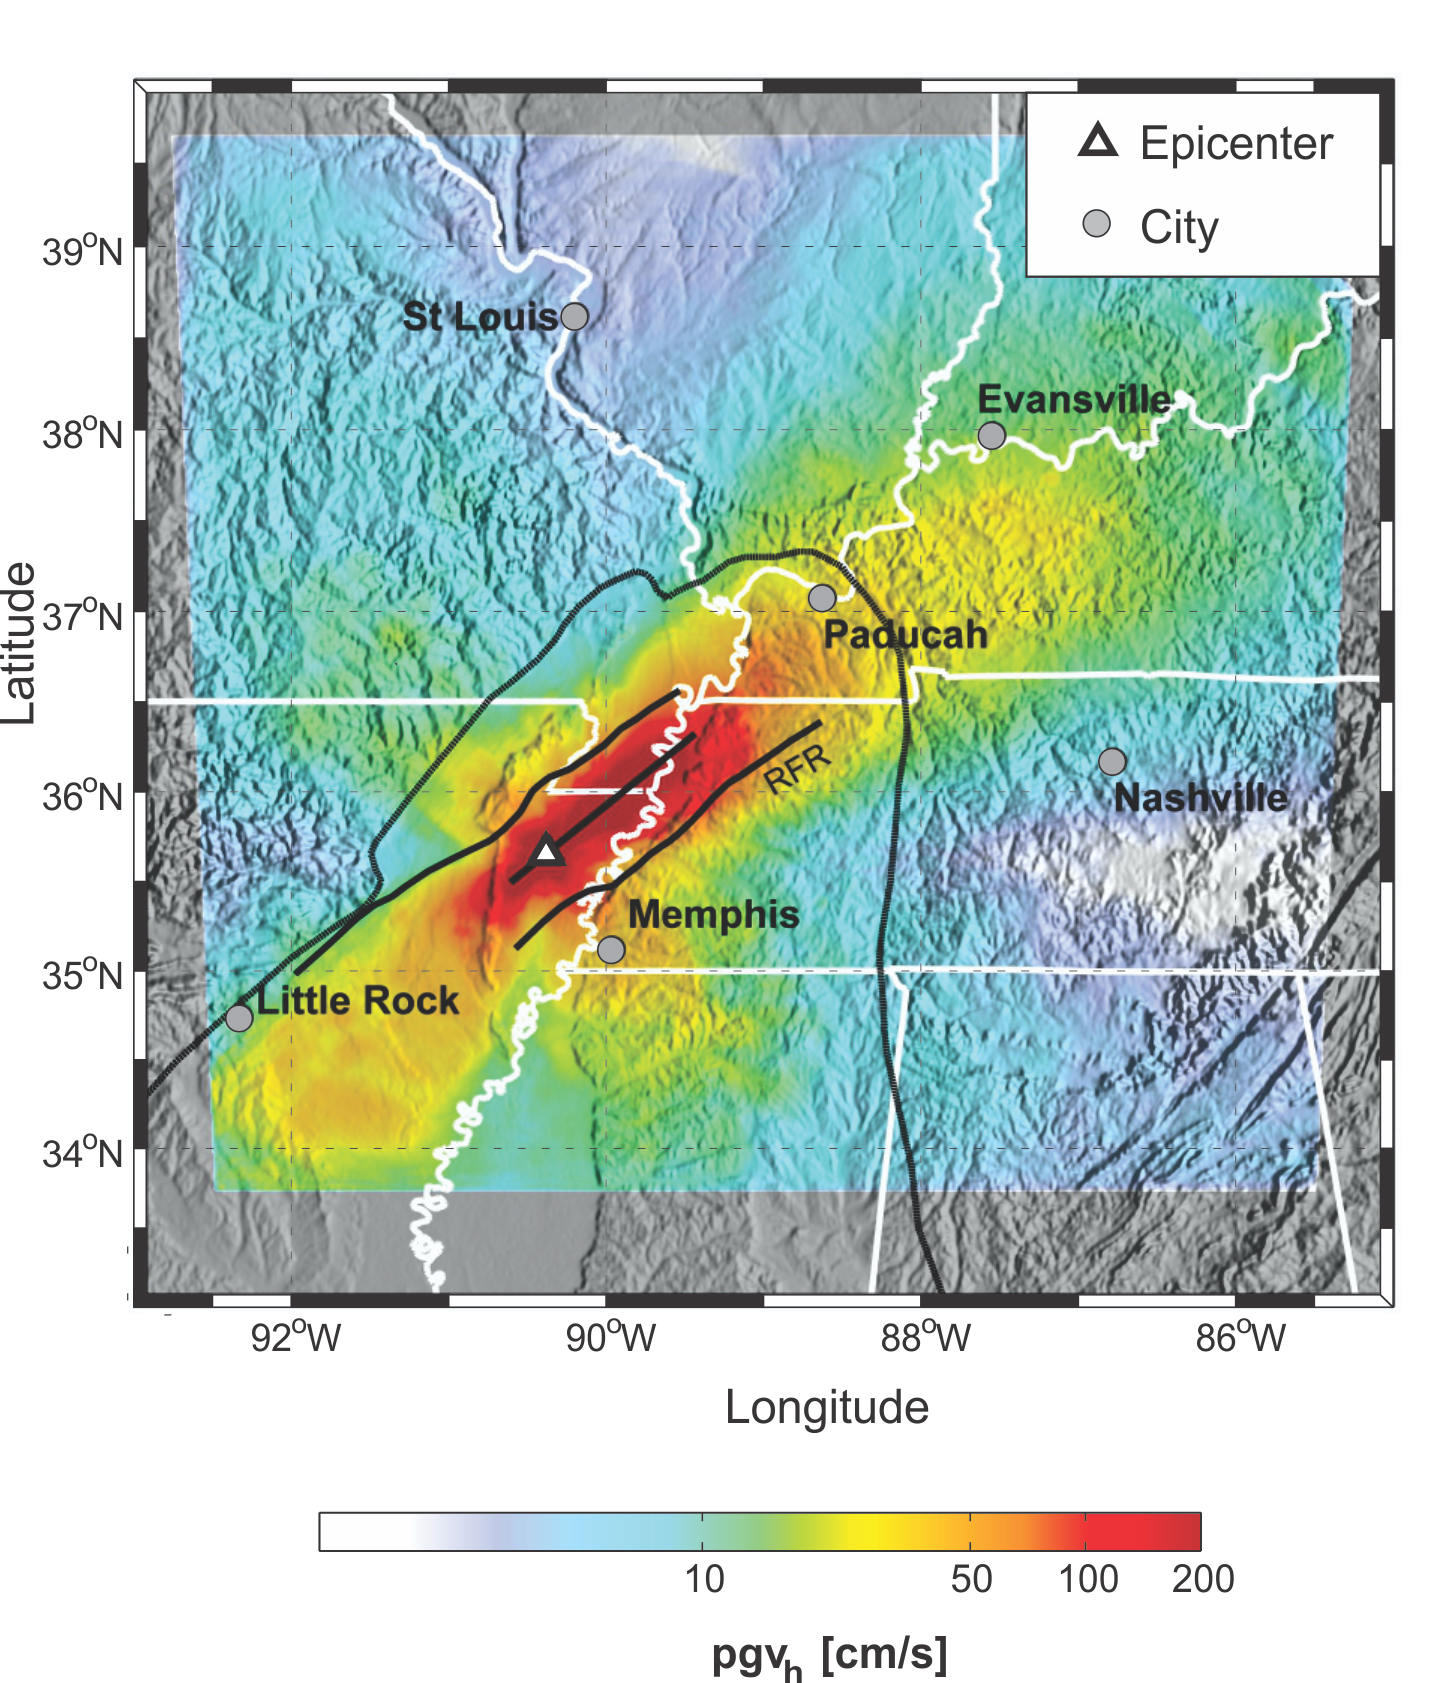 New Madrid Seismic Zone (NMSZ)